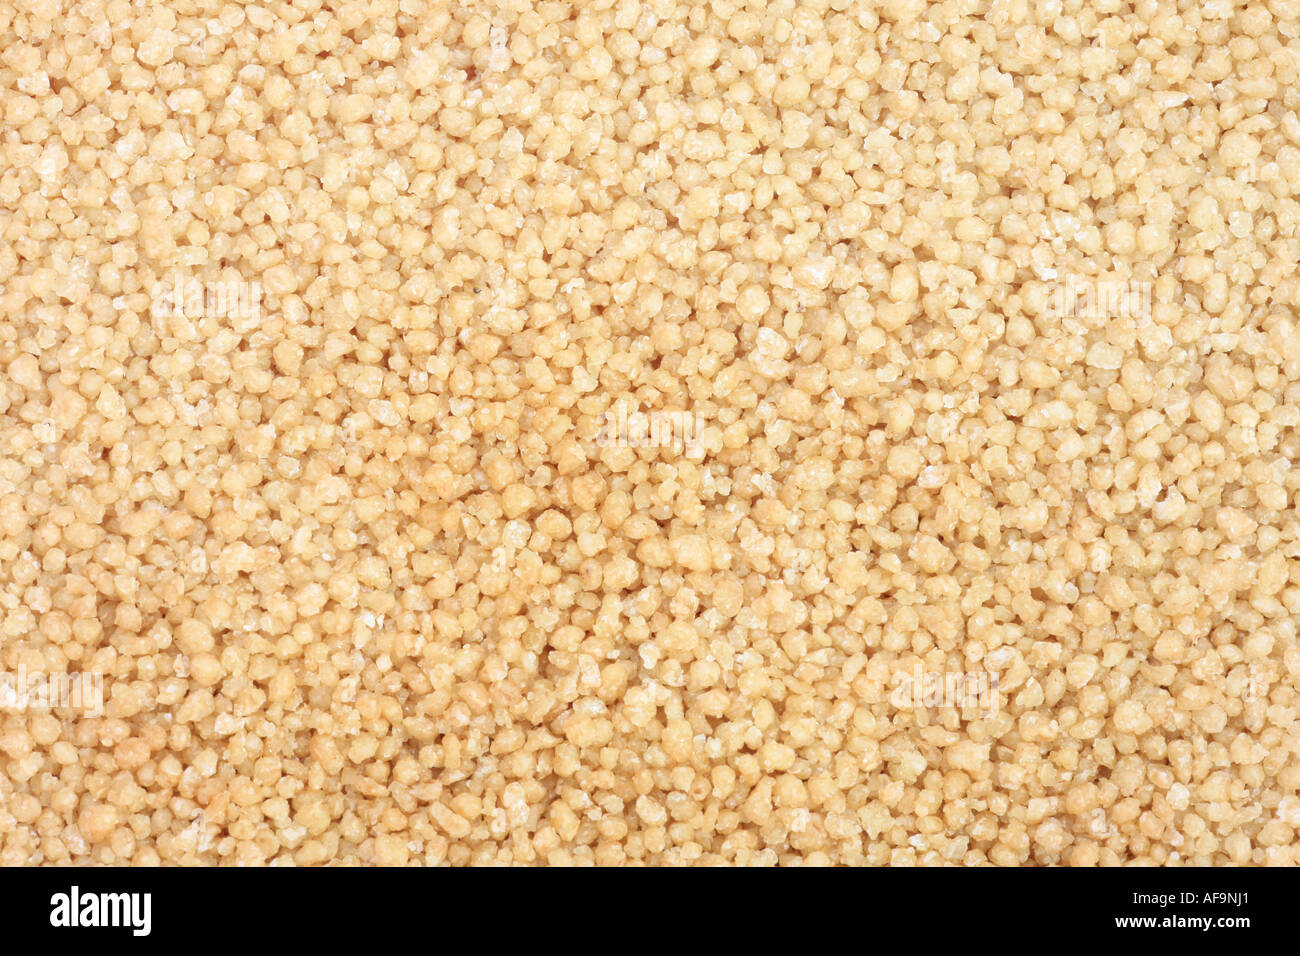 Durum Wheat (Triticum turgidum ssp. durum, Triticum durum), Couscous, grains Stock Photo